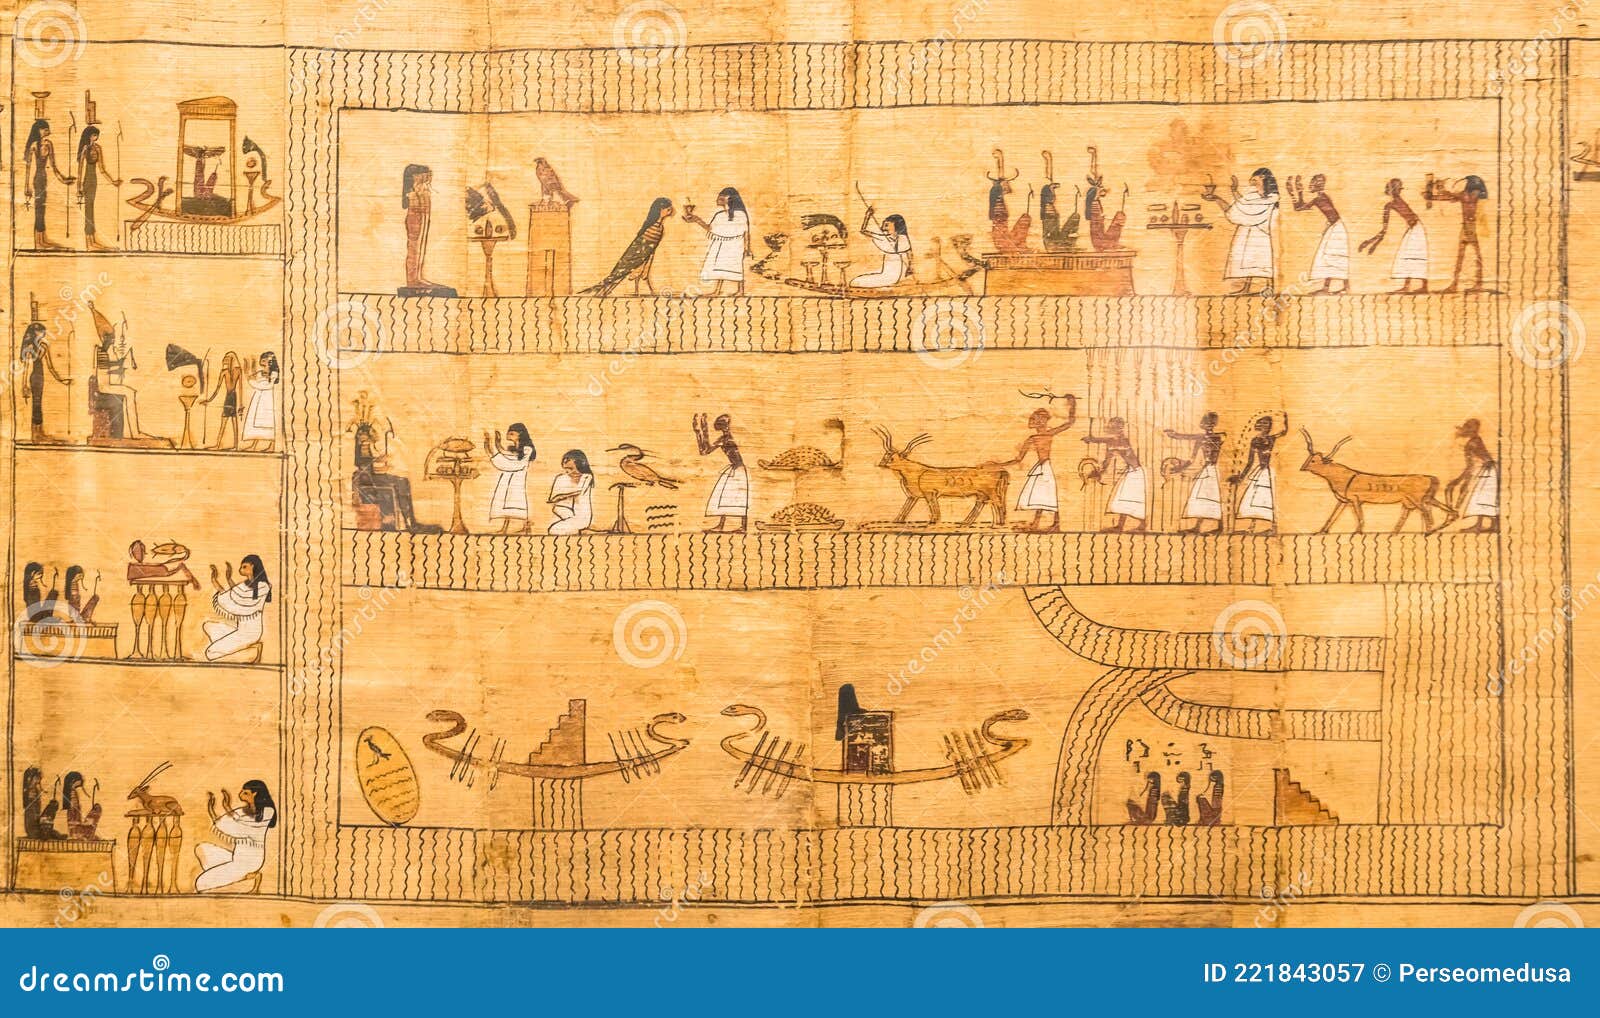 Tài liệu bằng giấy Papyrus viết bằng chữ Hình vẽ của Ai Cập cổ đại là những tài liệu quý giá của nhân loại và mang tầm quốc tế. Bây giờ, bạn có thể tìm hiểu về những bức tài liệu Papyrus này và khám phá thế giới bí ẩn của người Ai Cập cổ đại một cách tiện lợi và dễ dàng.